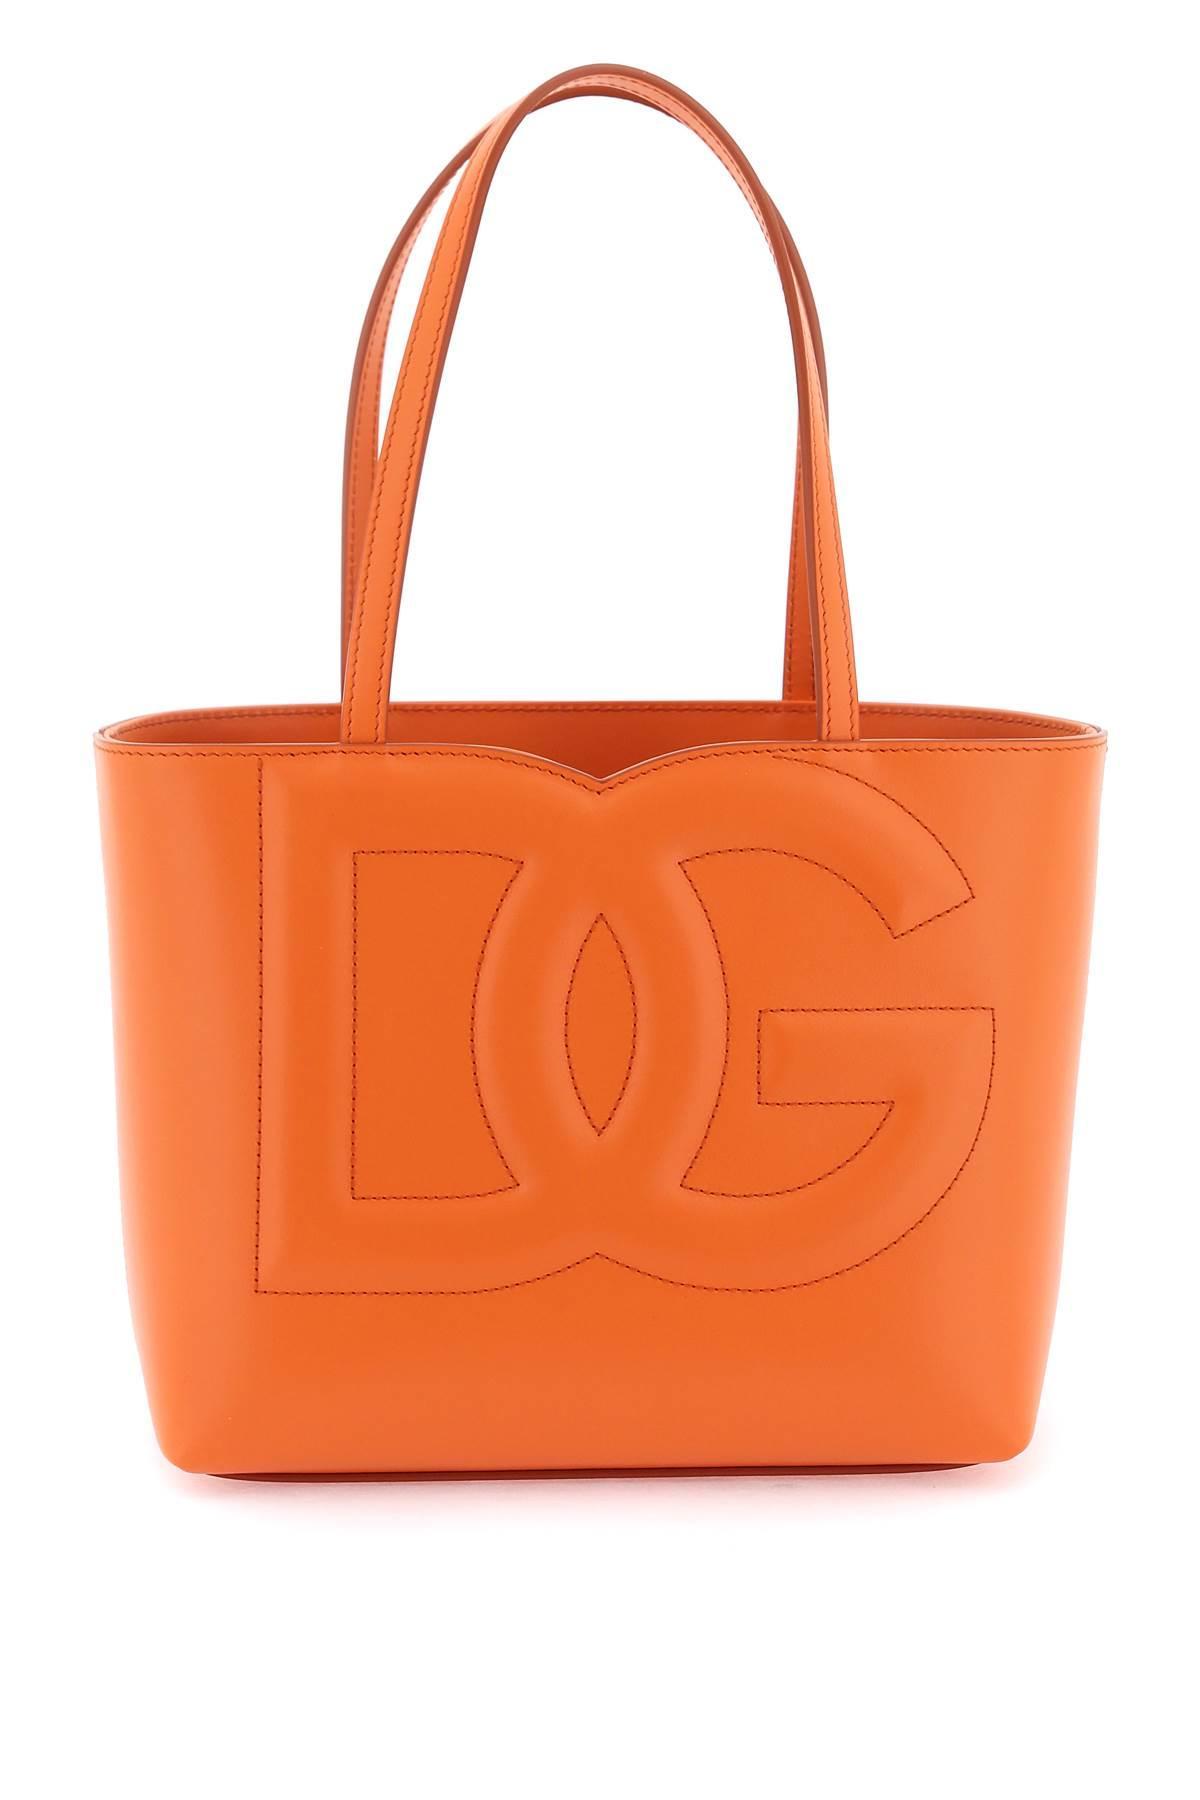 Kustlijn Verlichting krom Dolce & Gabbana Dg Ledereinkaufstasche in het Oranje | Lyst BE